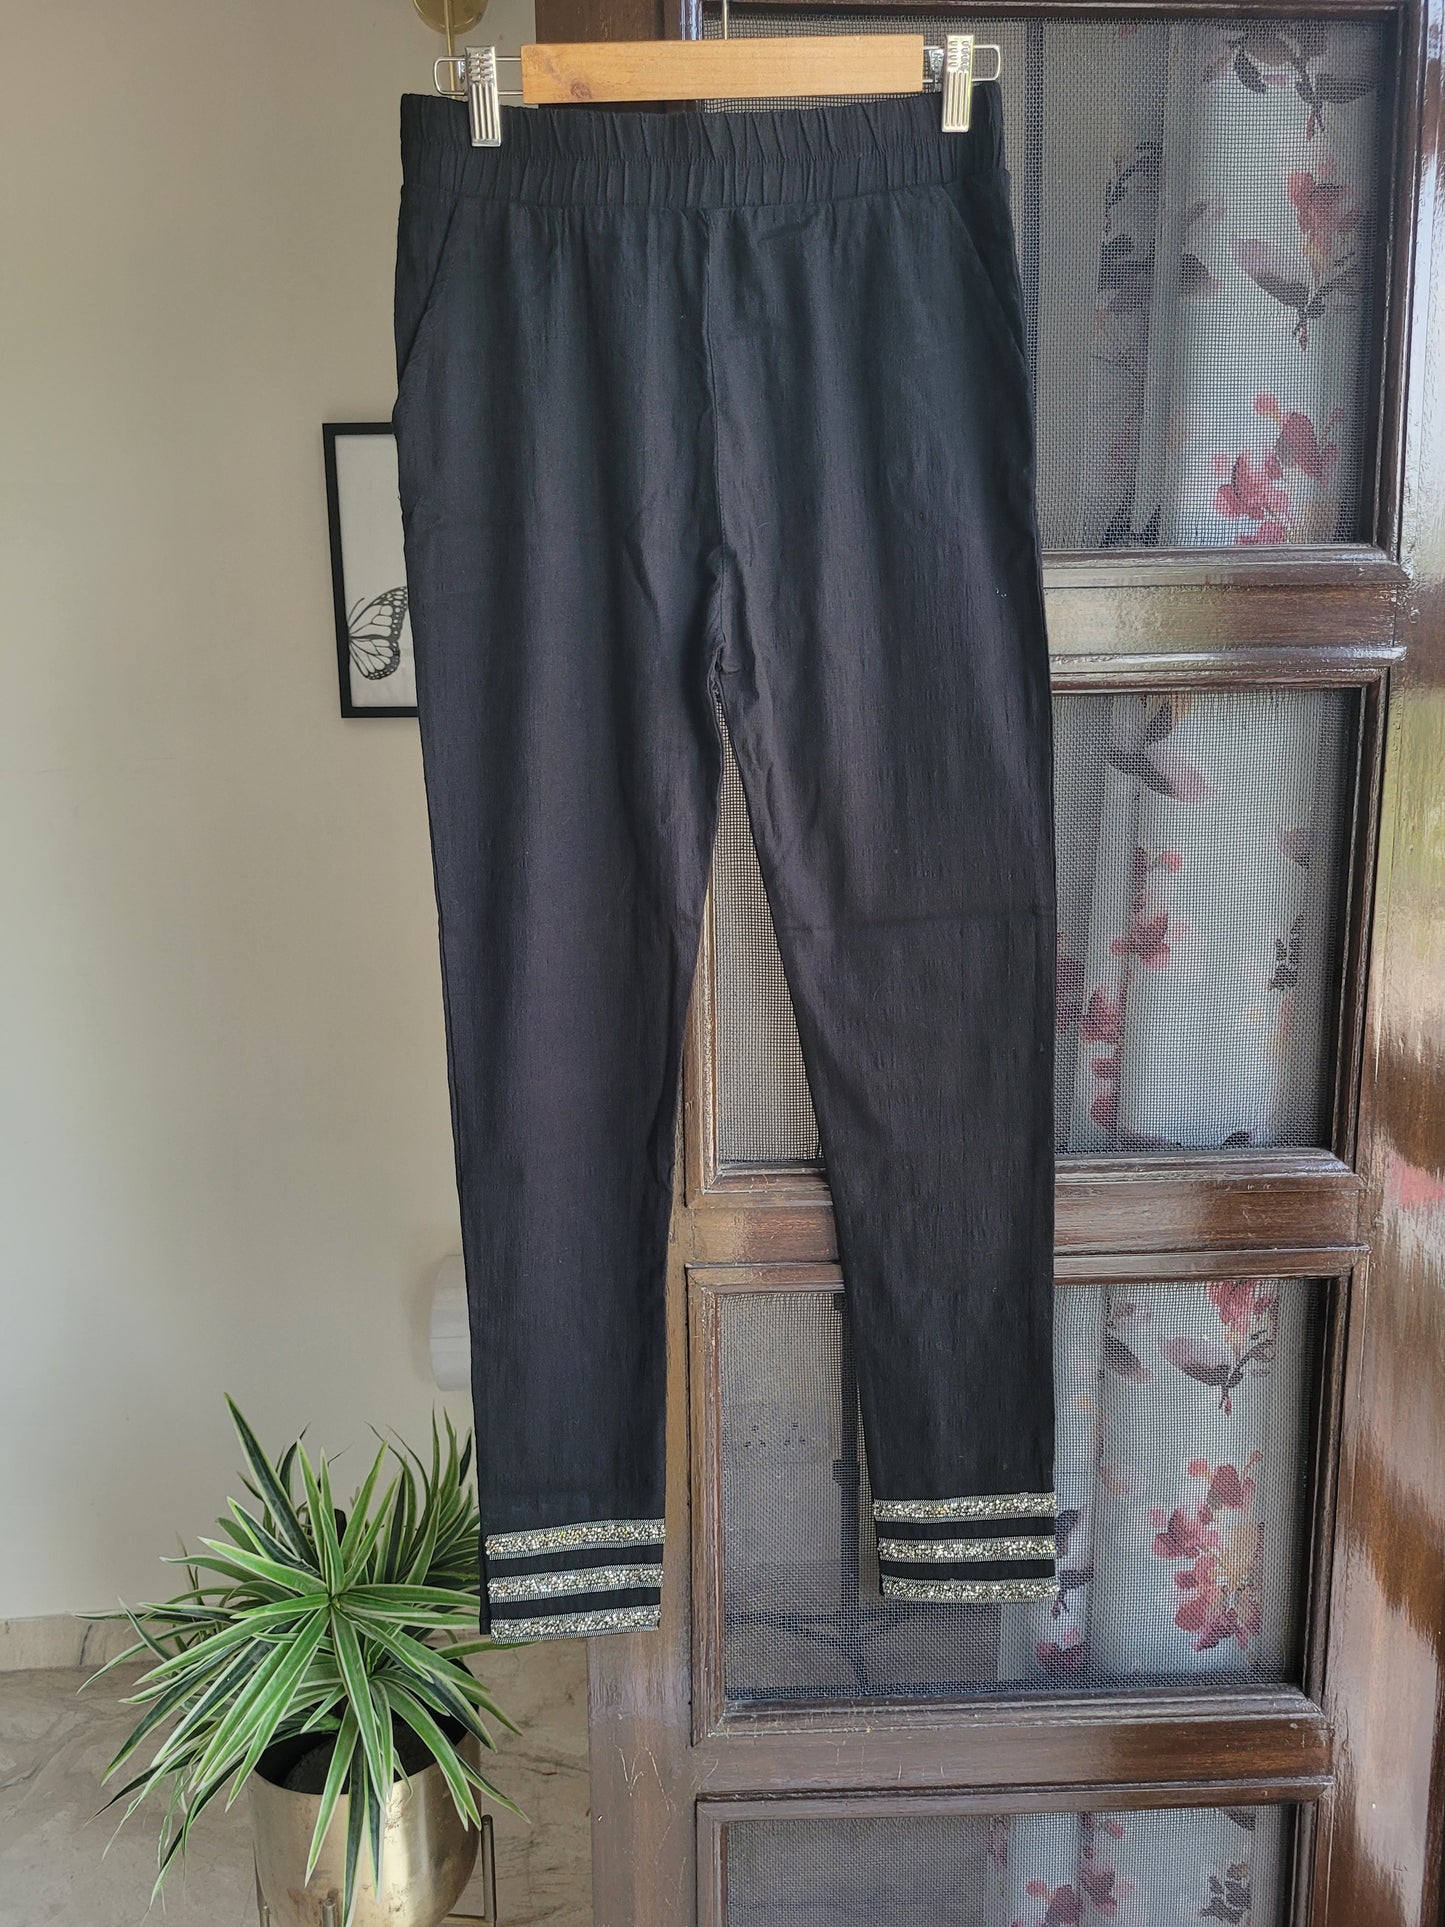 BESTSELLER Swarovski Pants TIER 3 - Black